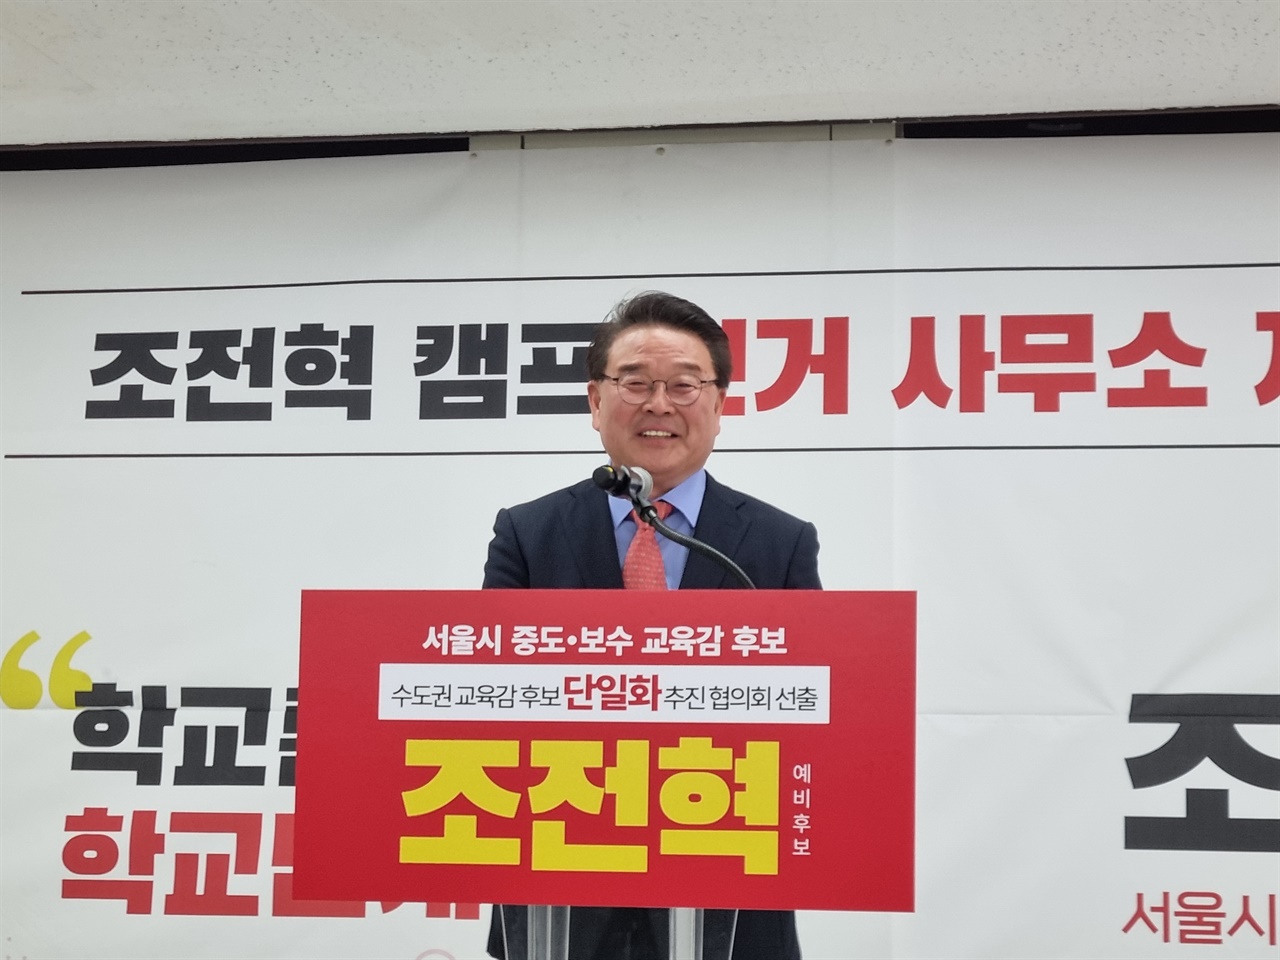 조전혁 서울시교육감 예비후보 선거캠프 개소식 인사말